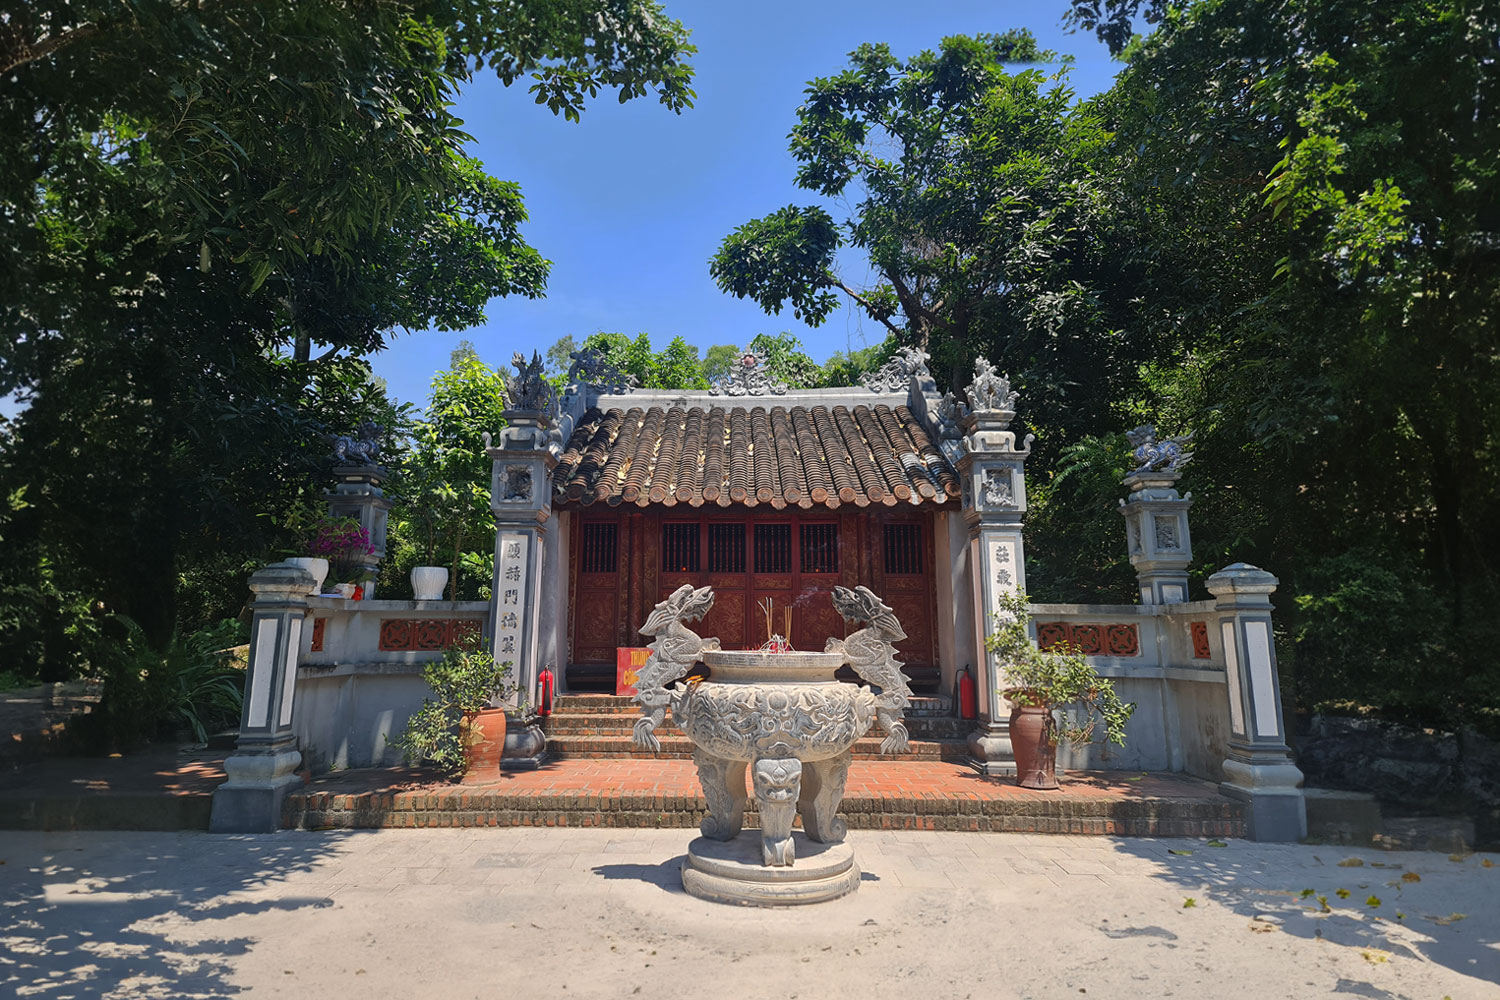 Đền Thánh Mẫu Liễu Hạnh Công chúa là điểm du lịch tâm linh bạn nhất định phải ghé thăm khi đến Quảng Bình.